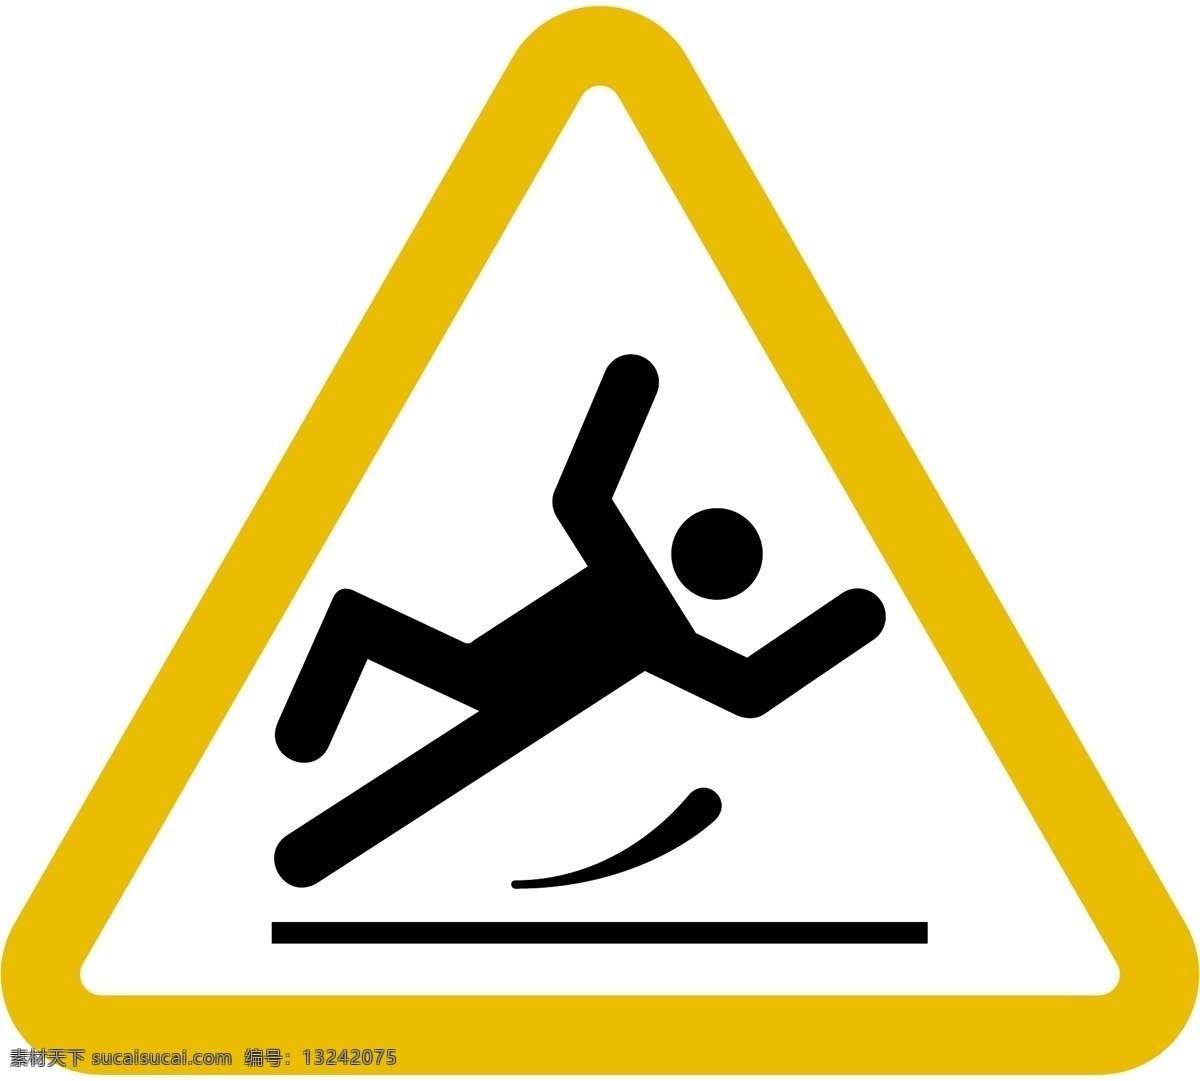 小心滑倒 当心滑倒 地滑 小心地滑 当心地滑 摔跤 跌倒 小心跌倒 标志图标 公共标识标志